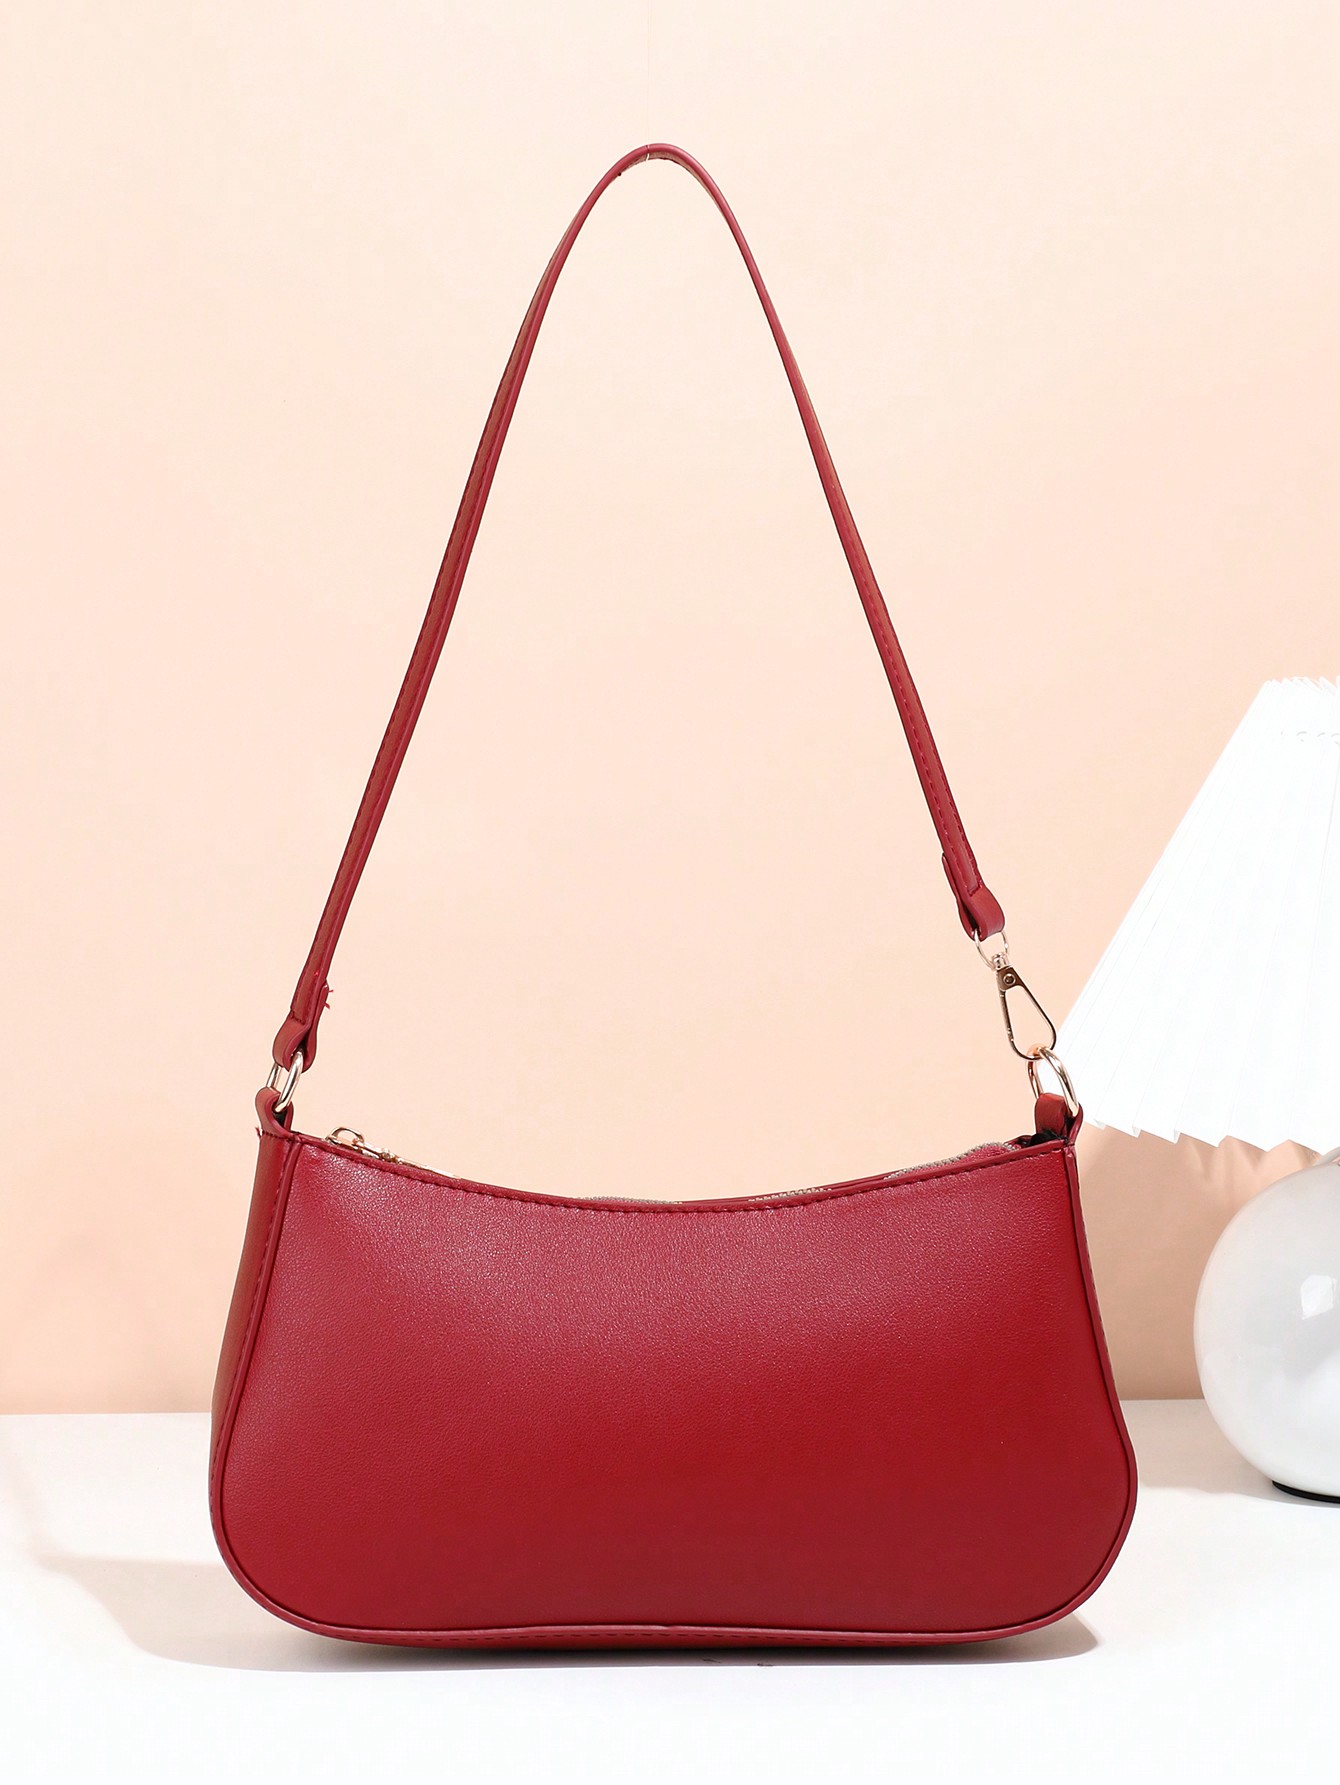 Женская холщовая сумка на одно плечо винно-красного цвета в простом стиле, бургундия